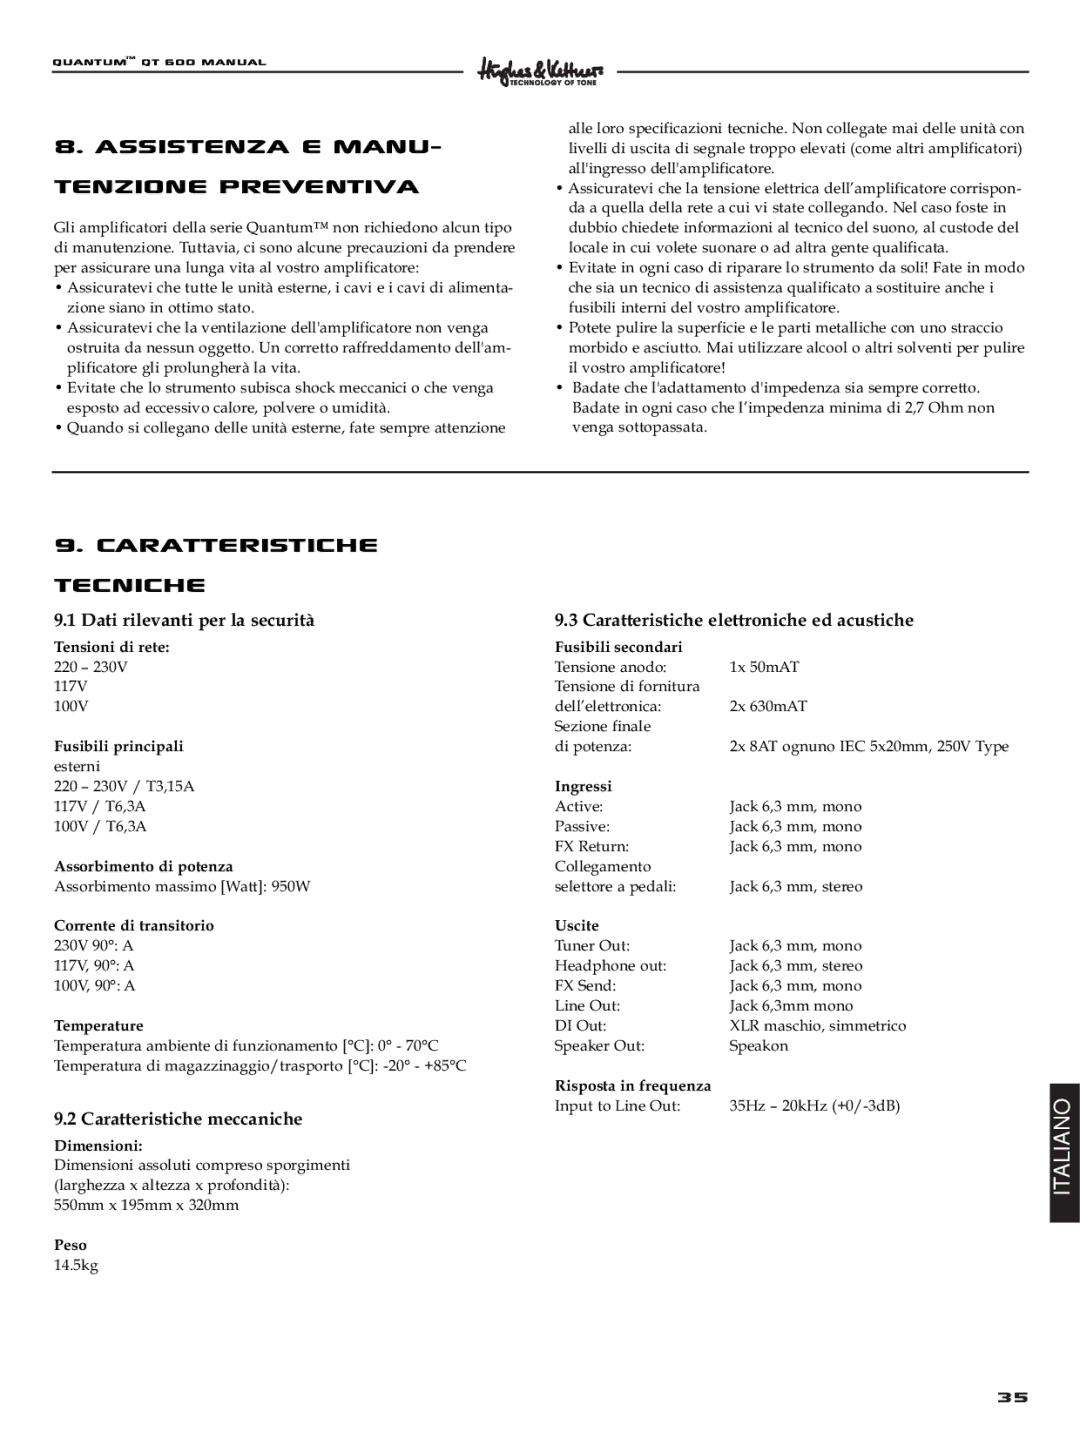 Quantum QT600 manual Assistenza e manu, Tenzione preventiva, Caratteristiche Tecniche, Caratteristiche meccaniche 